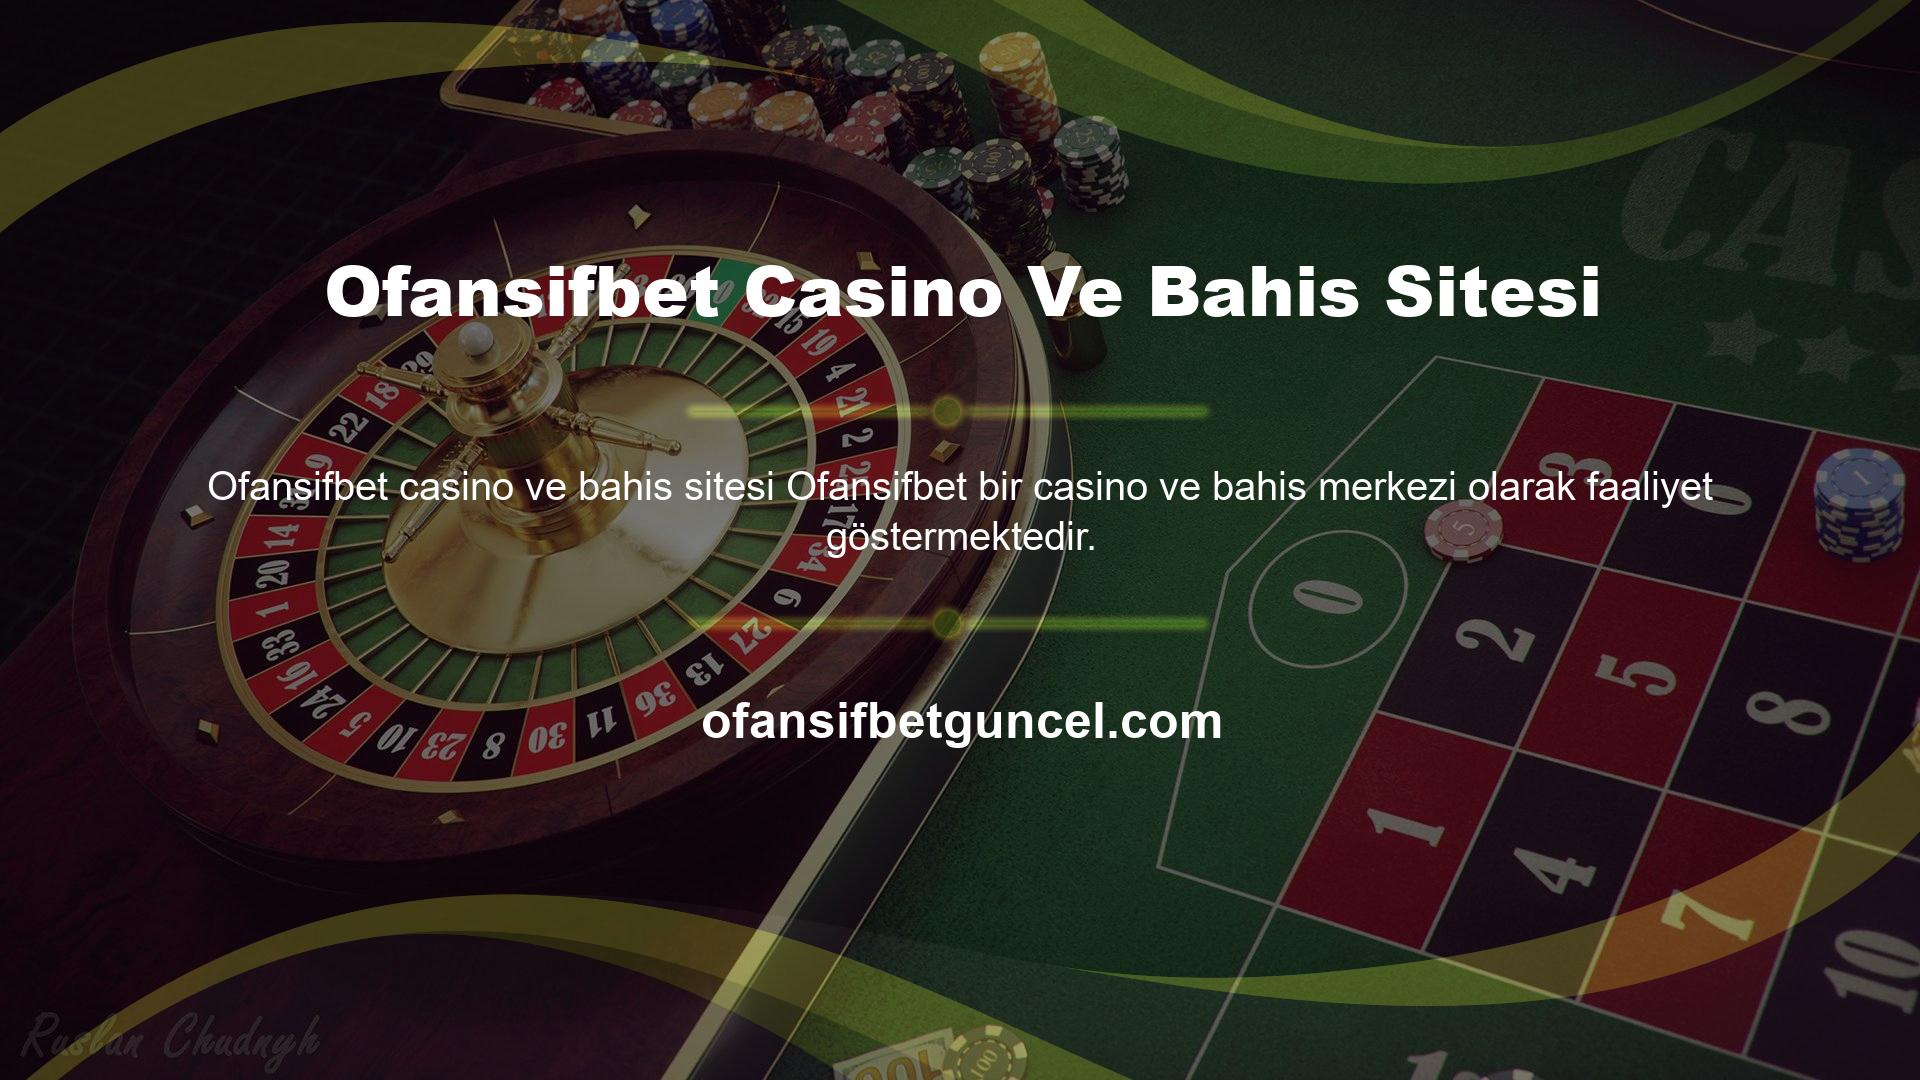 Canlı casino oyunları sitenin en popüler bölümüdür